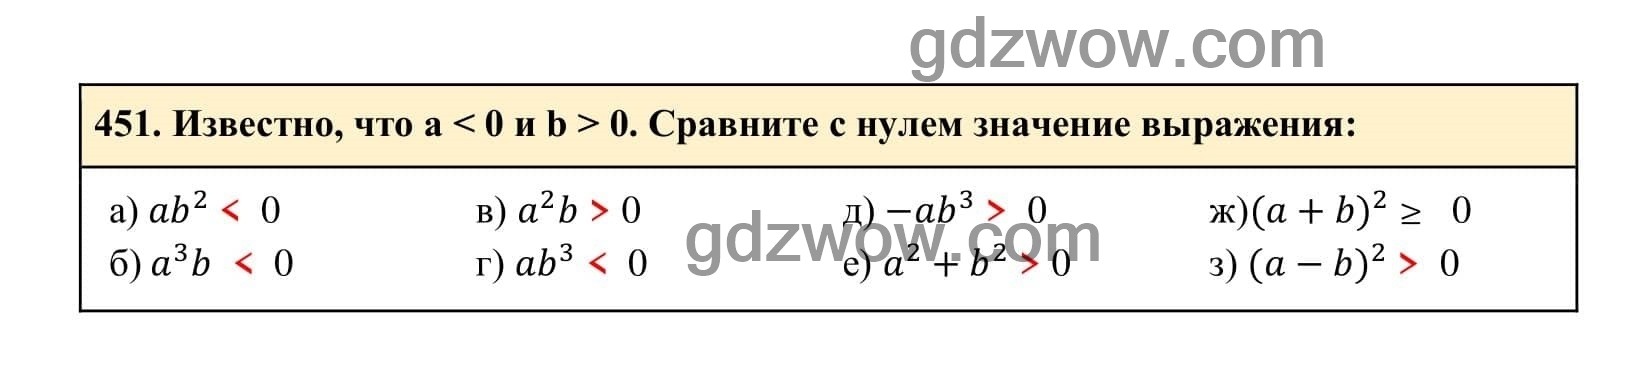 Упражнение 451 - ГДЗ по Алгебре 7 класс Учебник Макарычев (решебник) - GDZwow